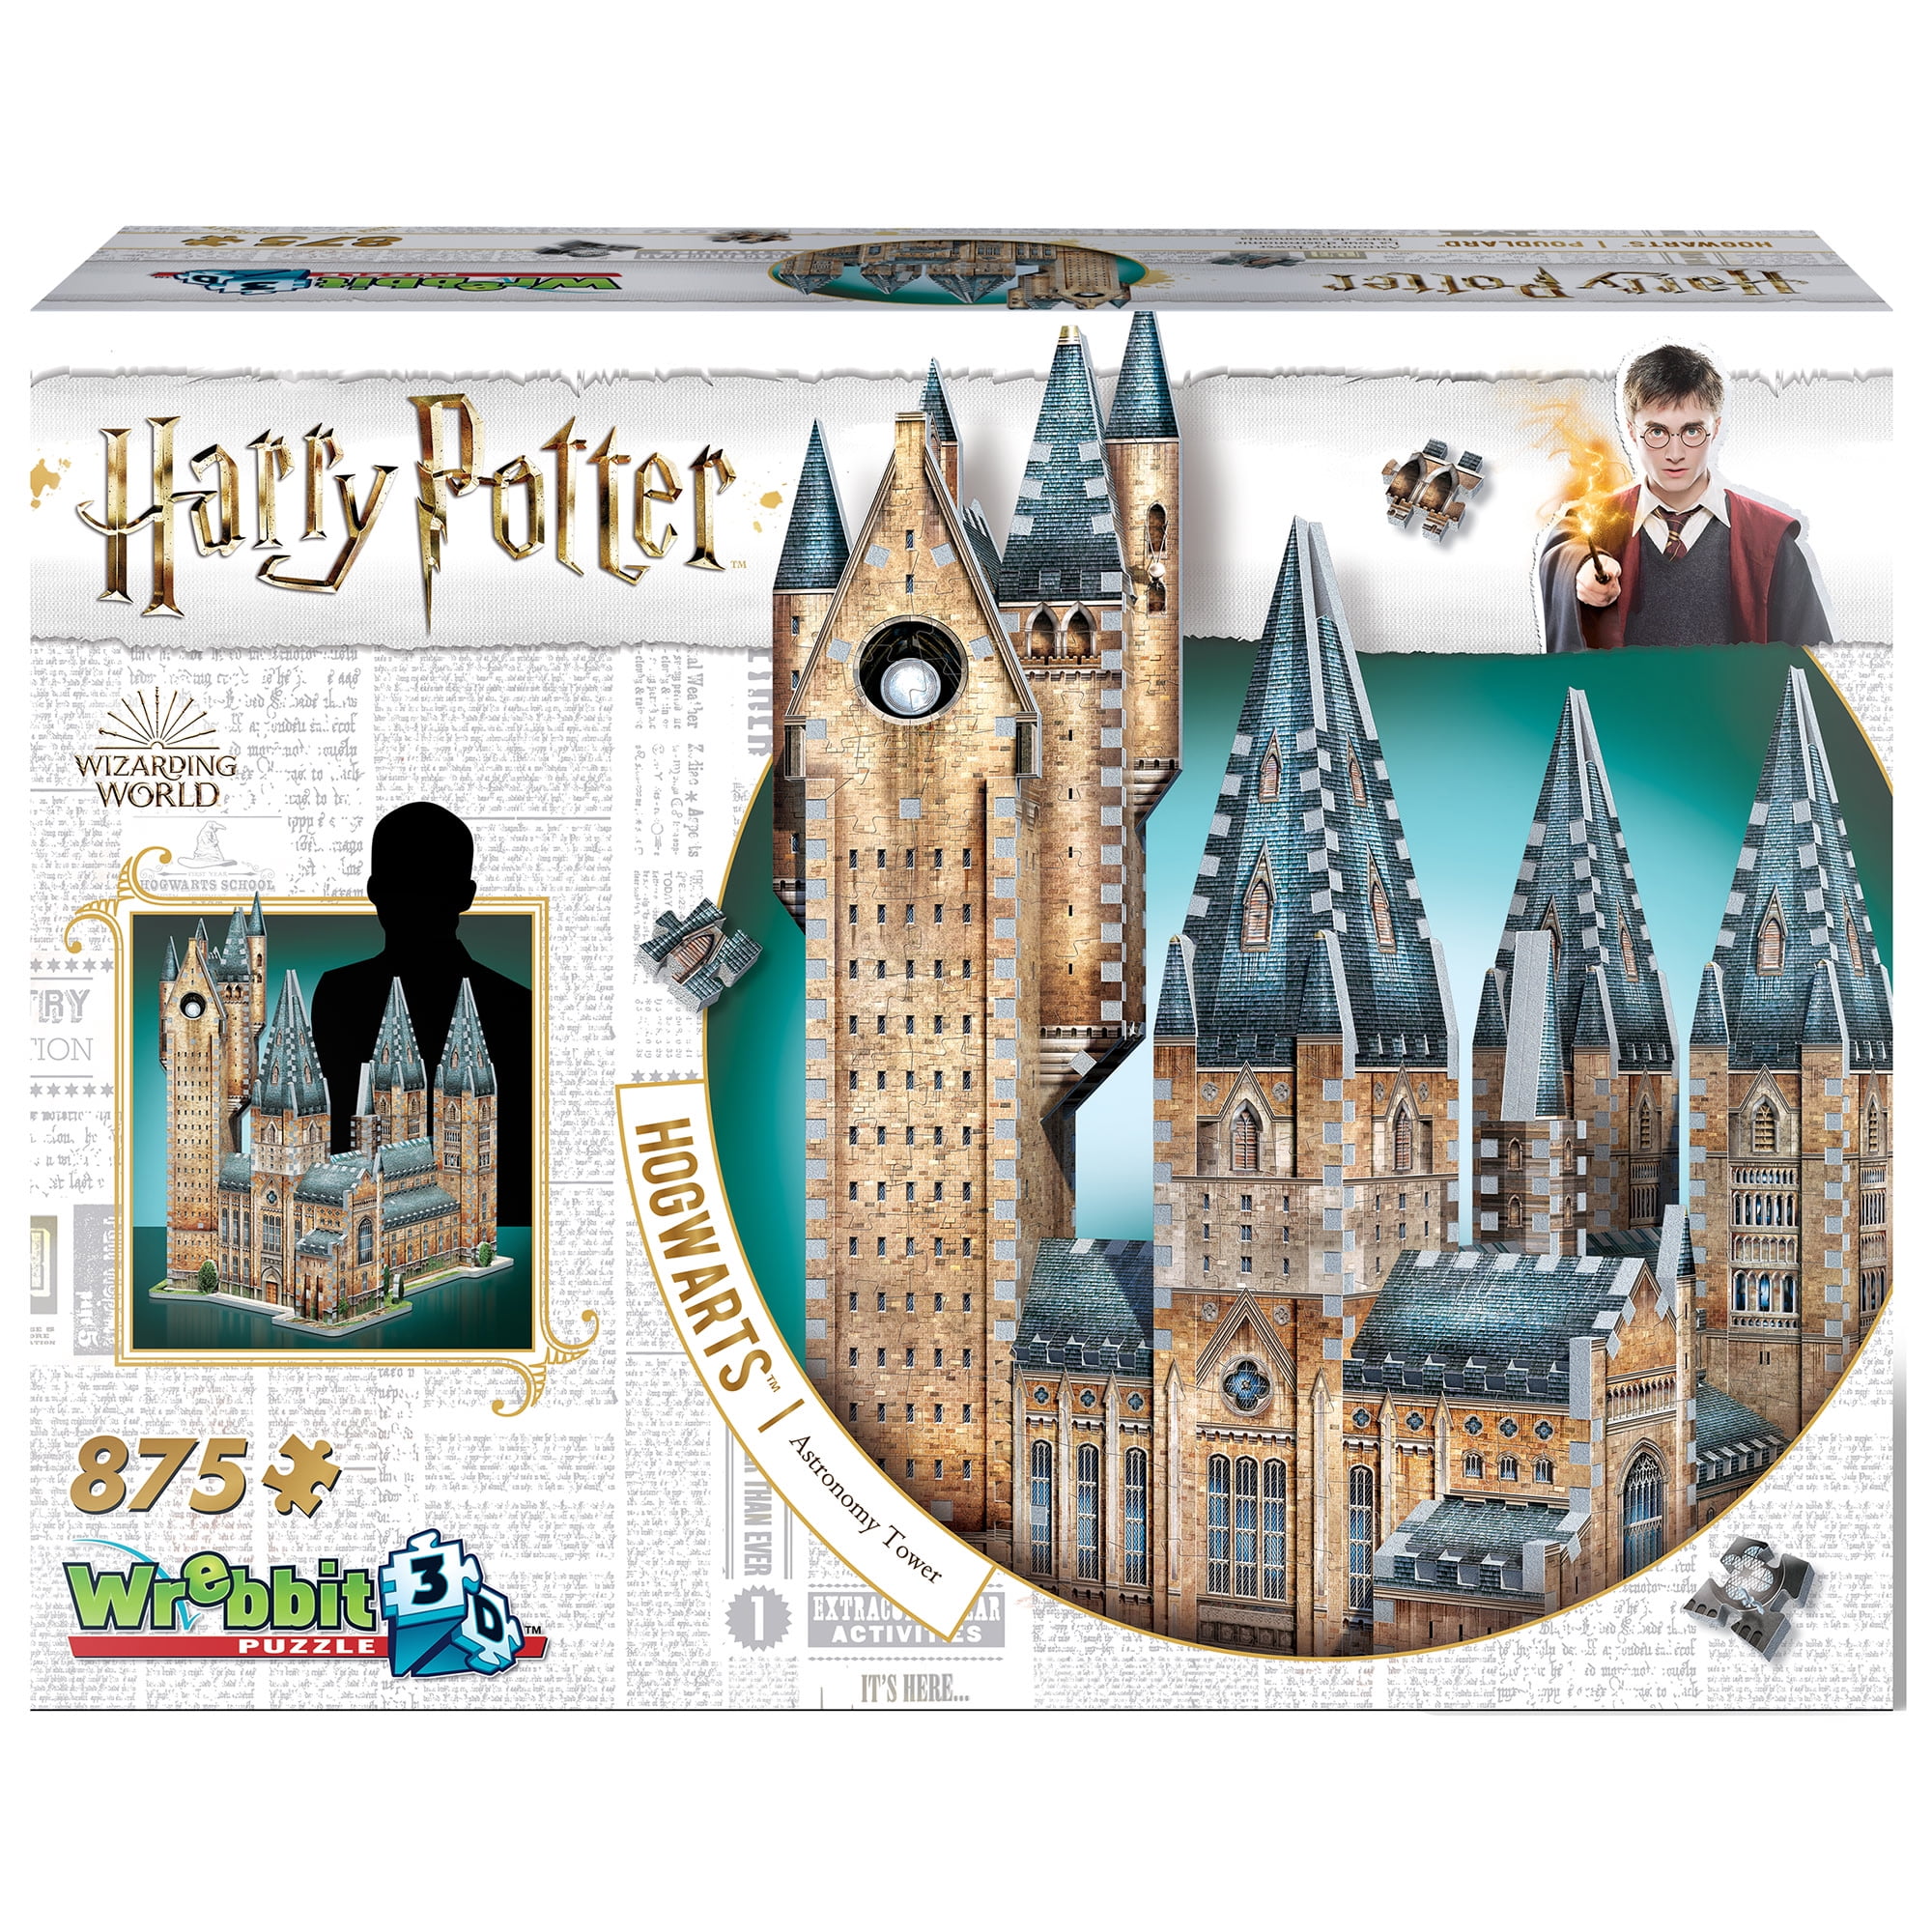 Diagon Alley Puzzle 3D Harry Potter 450 Pezzi Pieces WREBBIT PUZZLE W3D-1010 